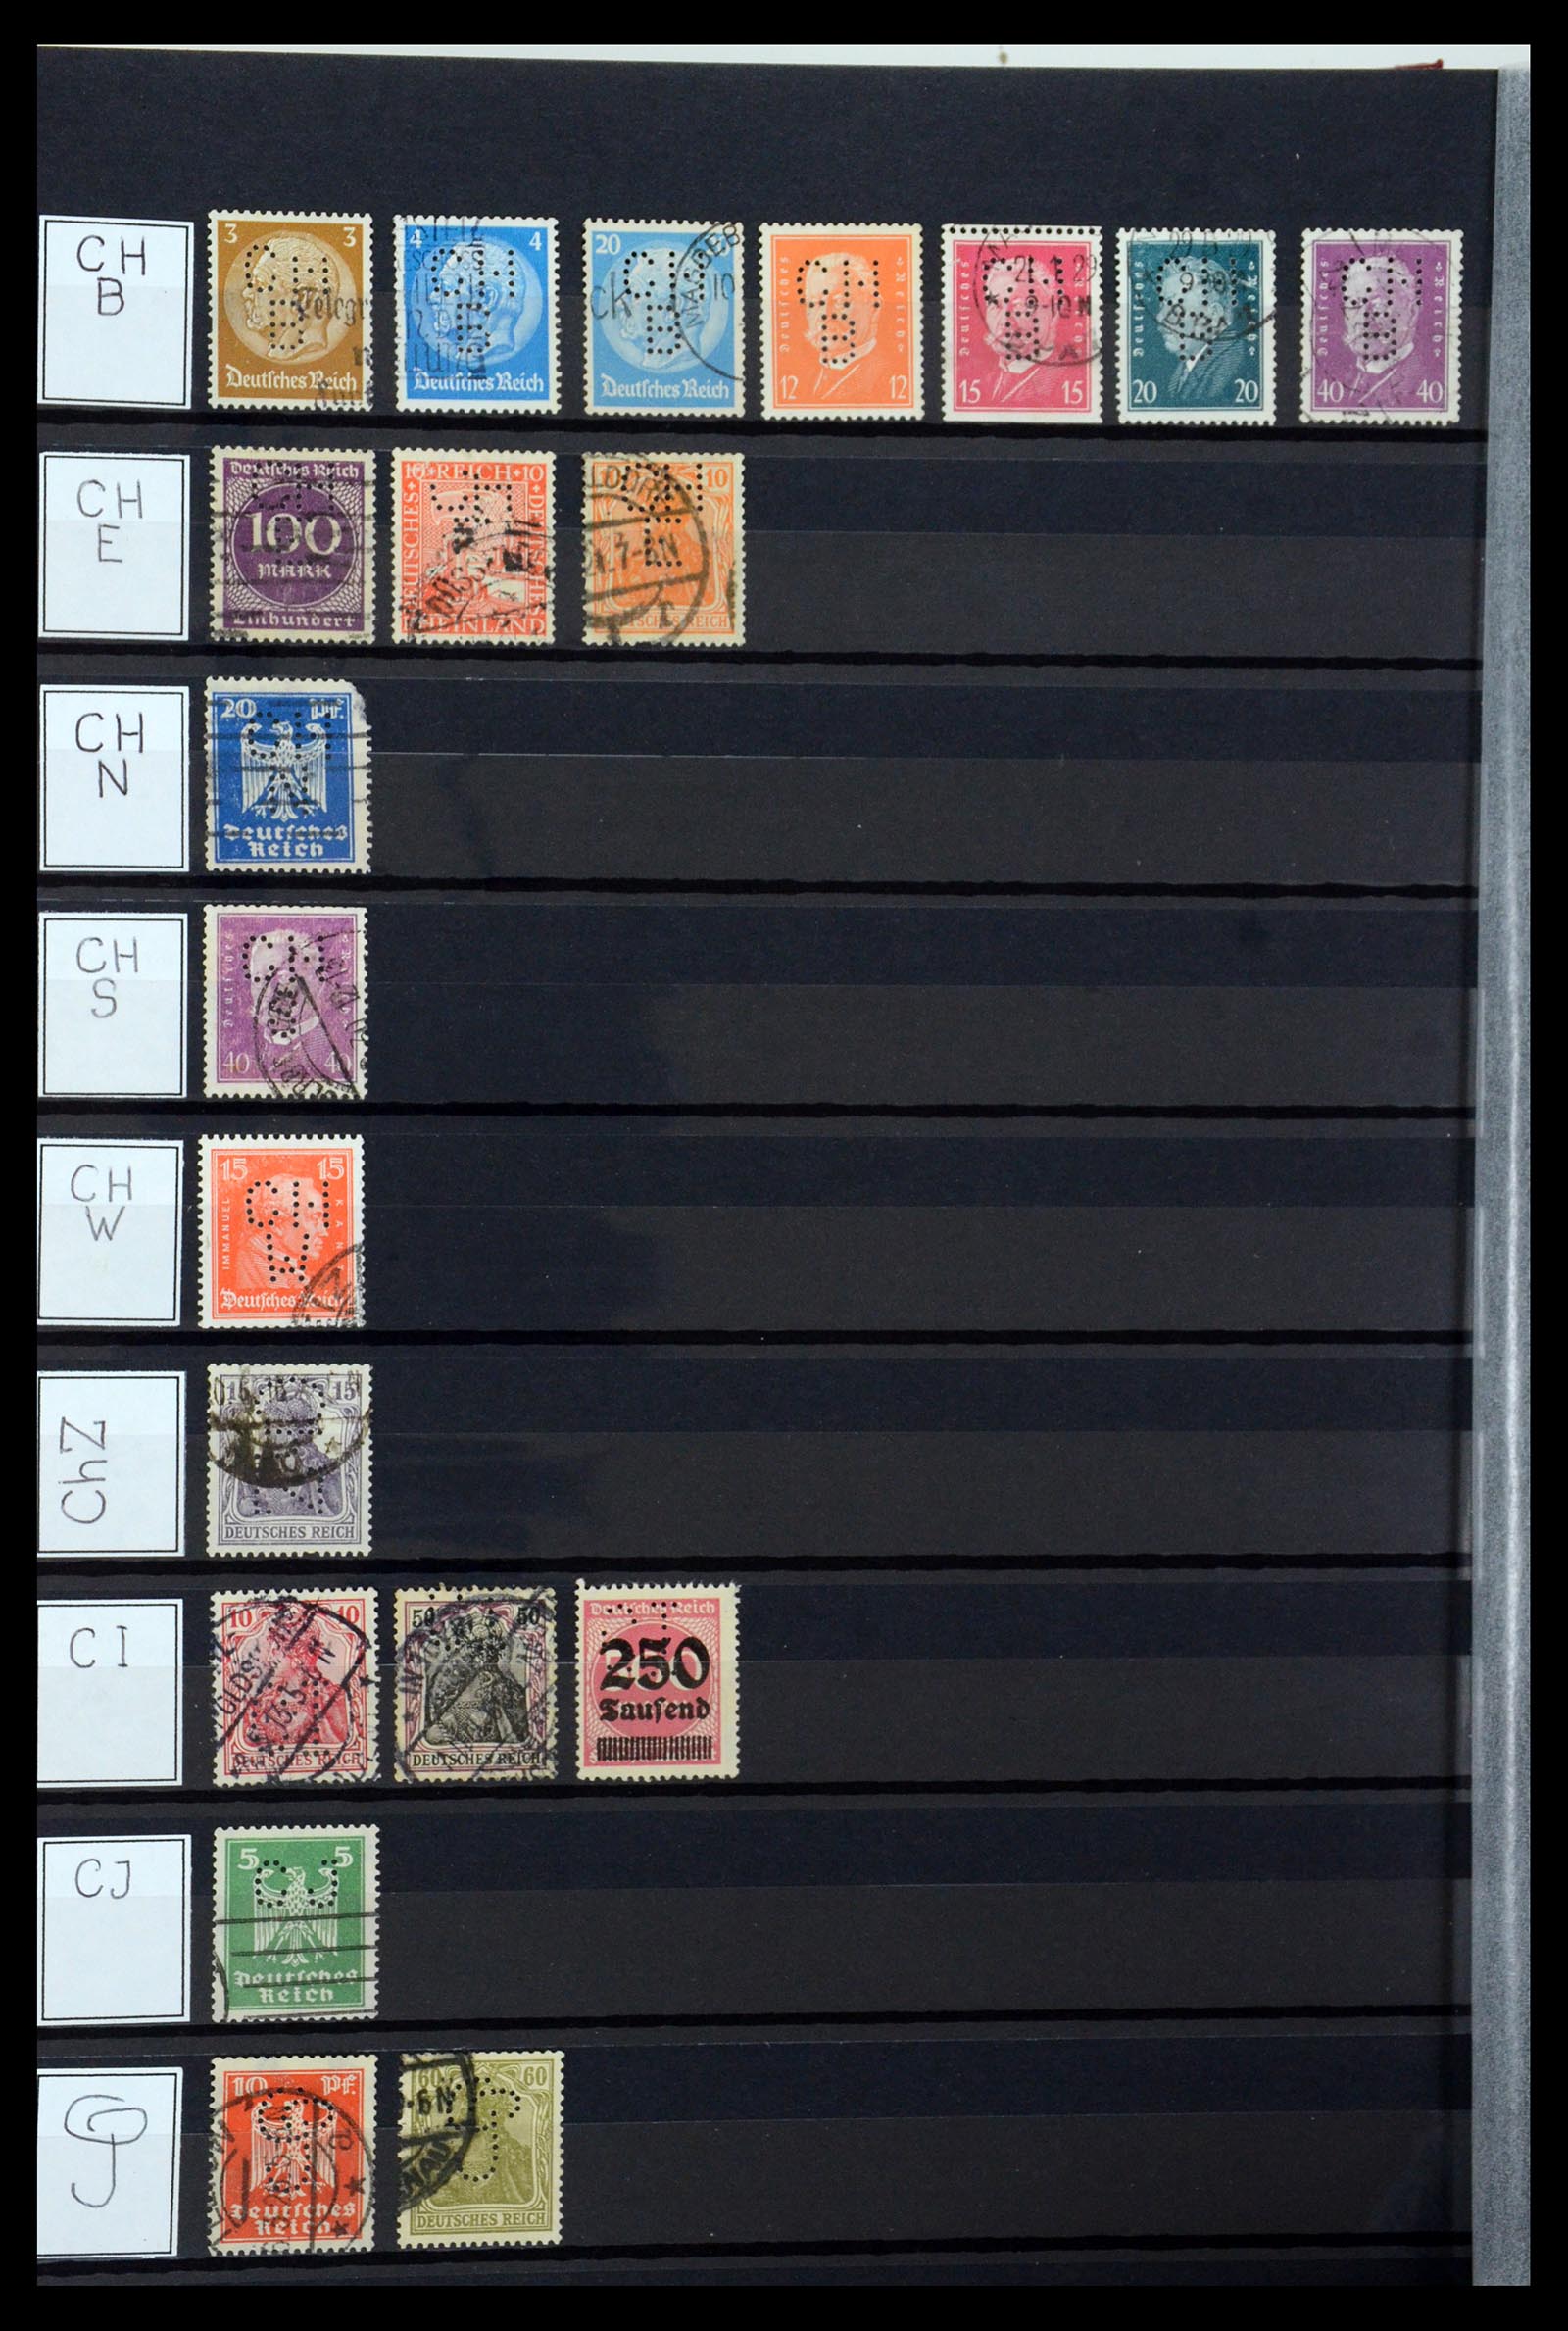 36405 072 - Stamp collection 36405 German Reich perfins 1880-1945.